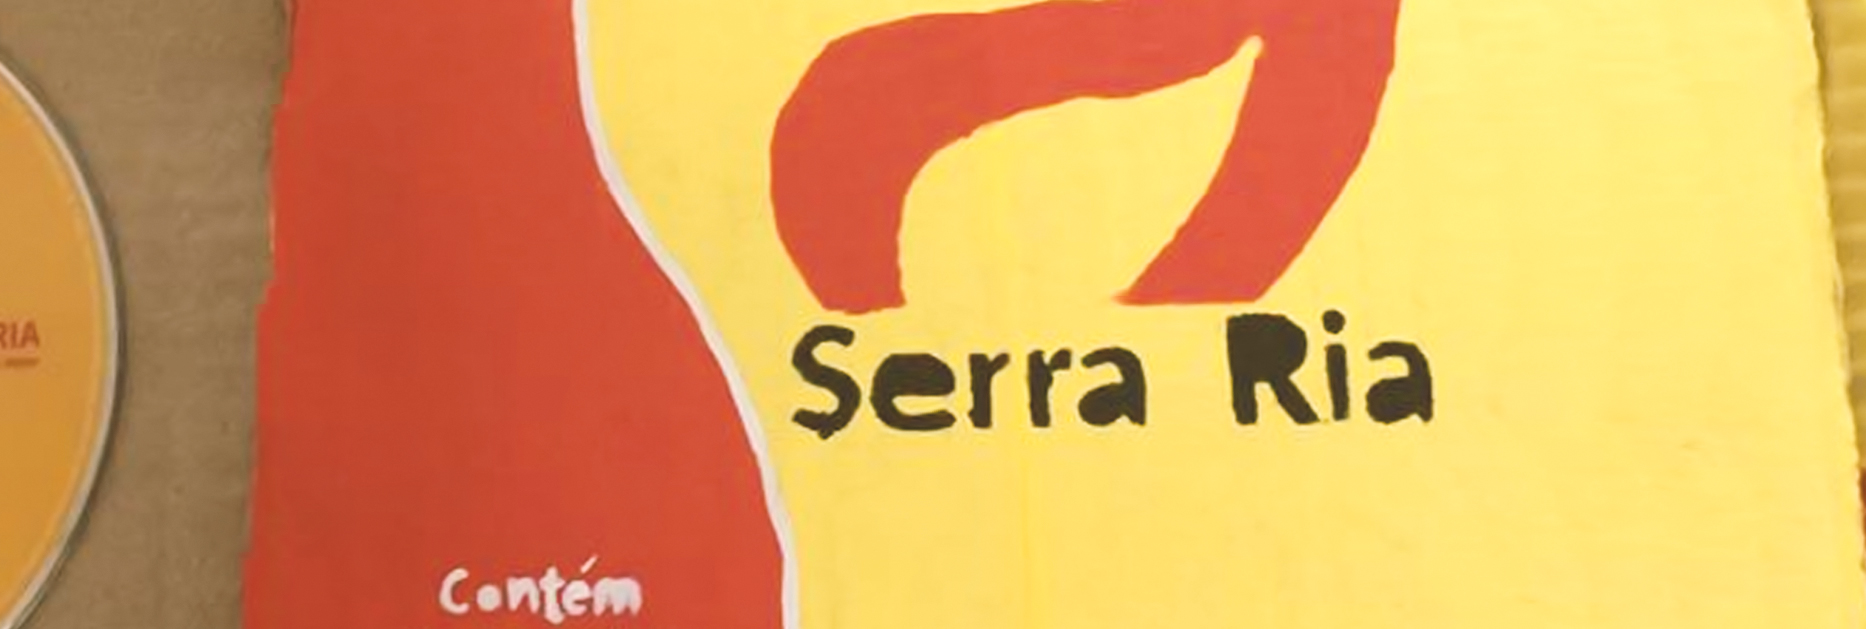 Richard Serraria transforma tese em disco, “Mais tambor menos motor”